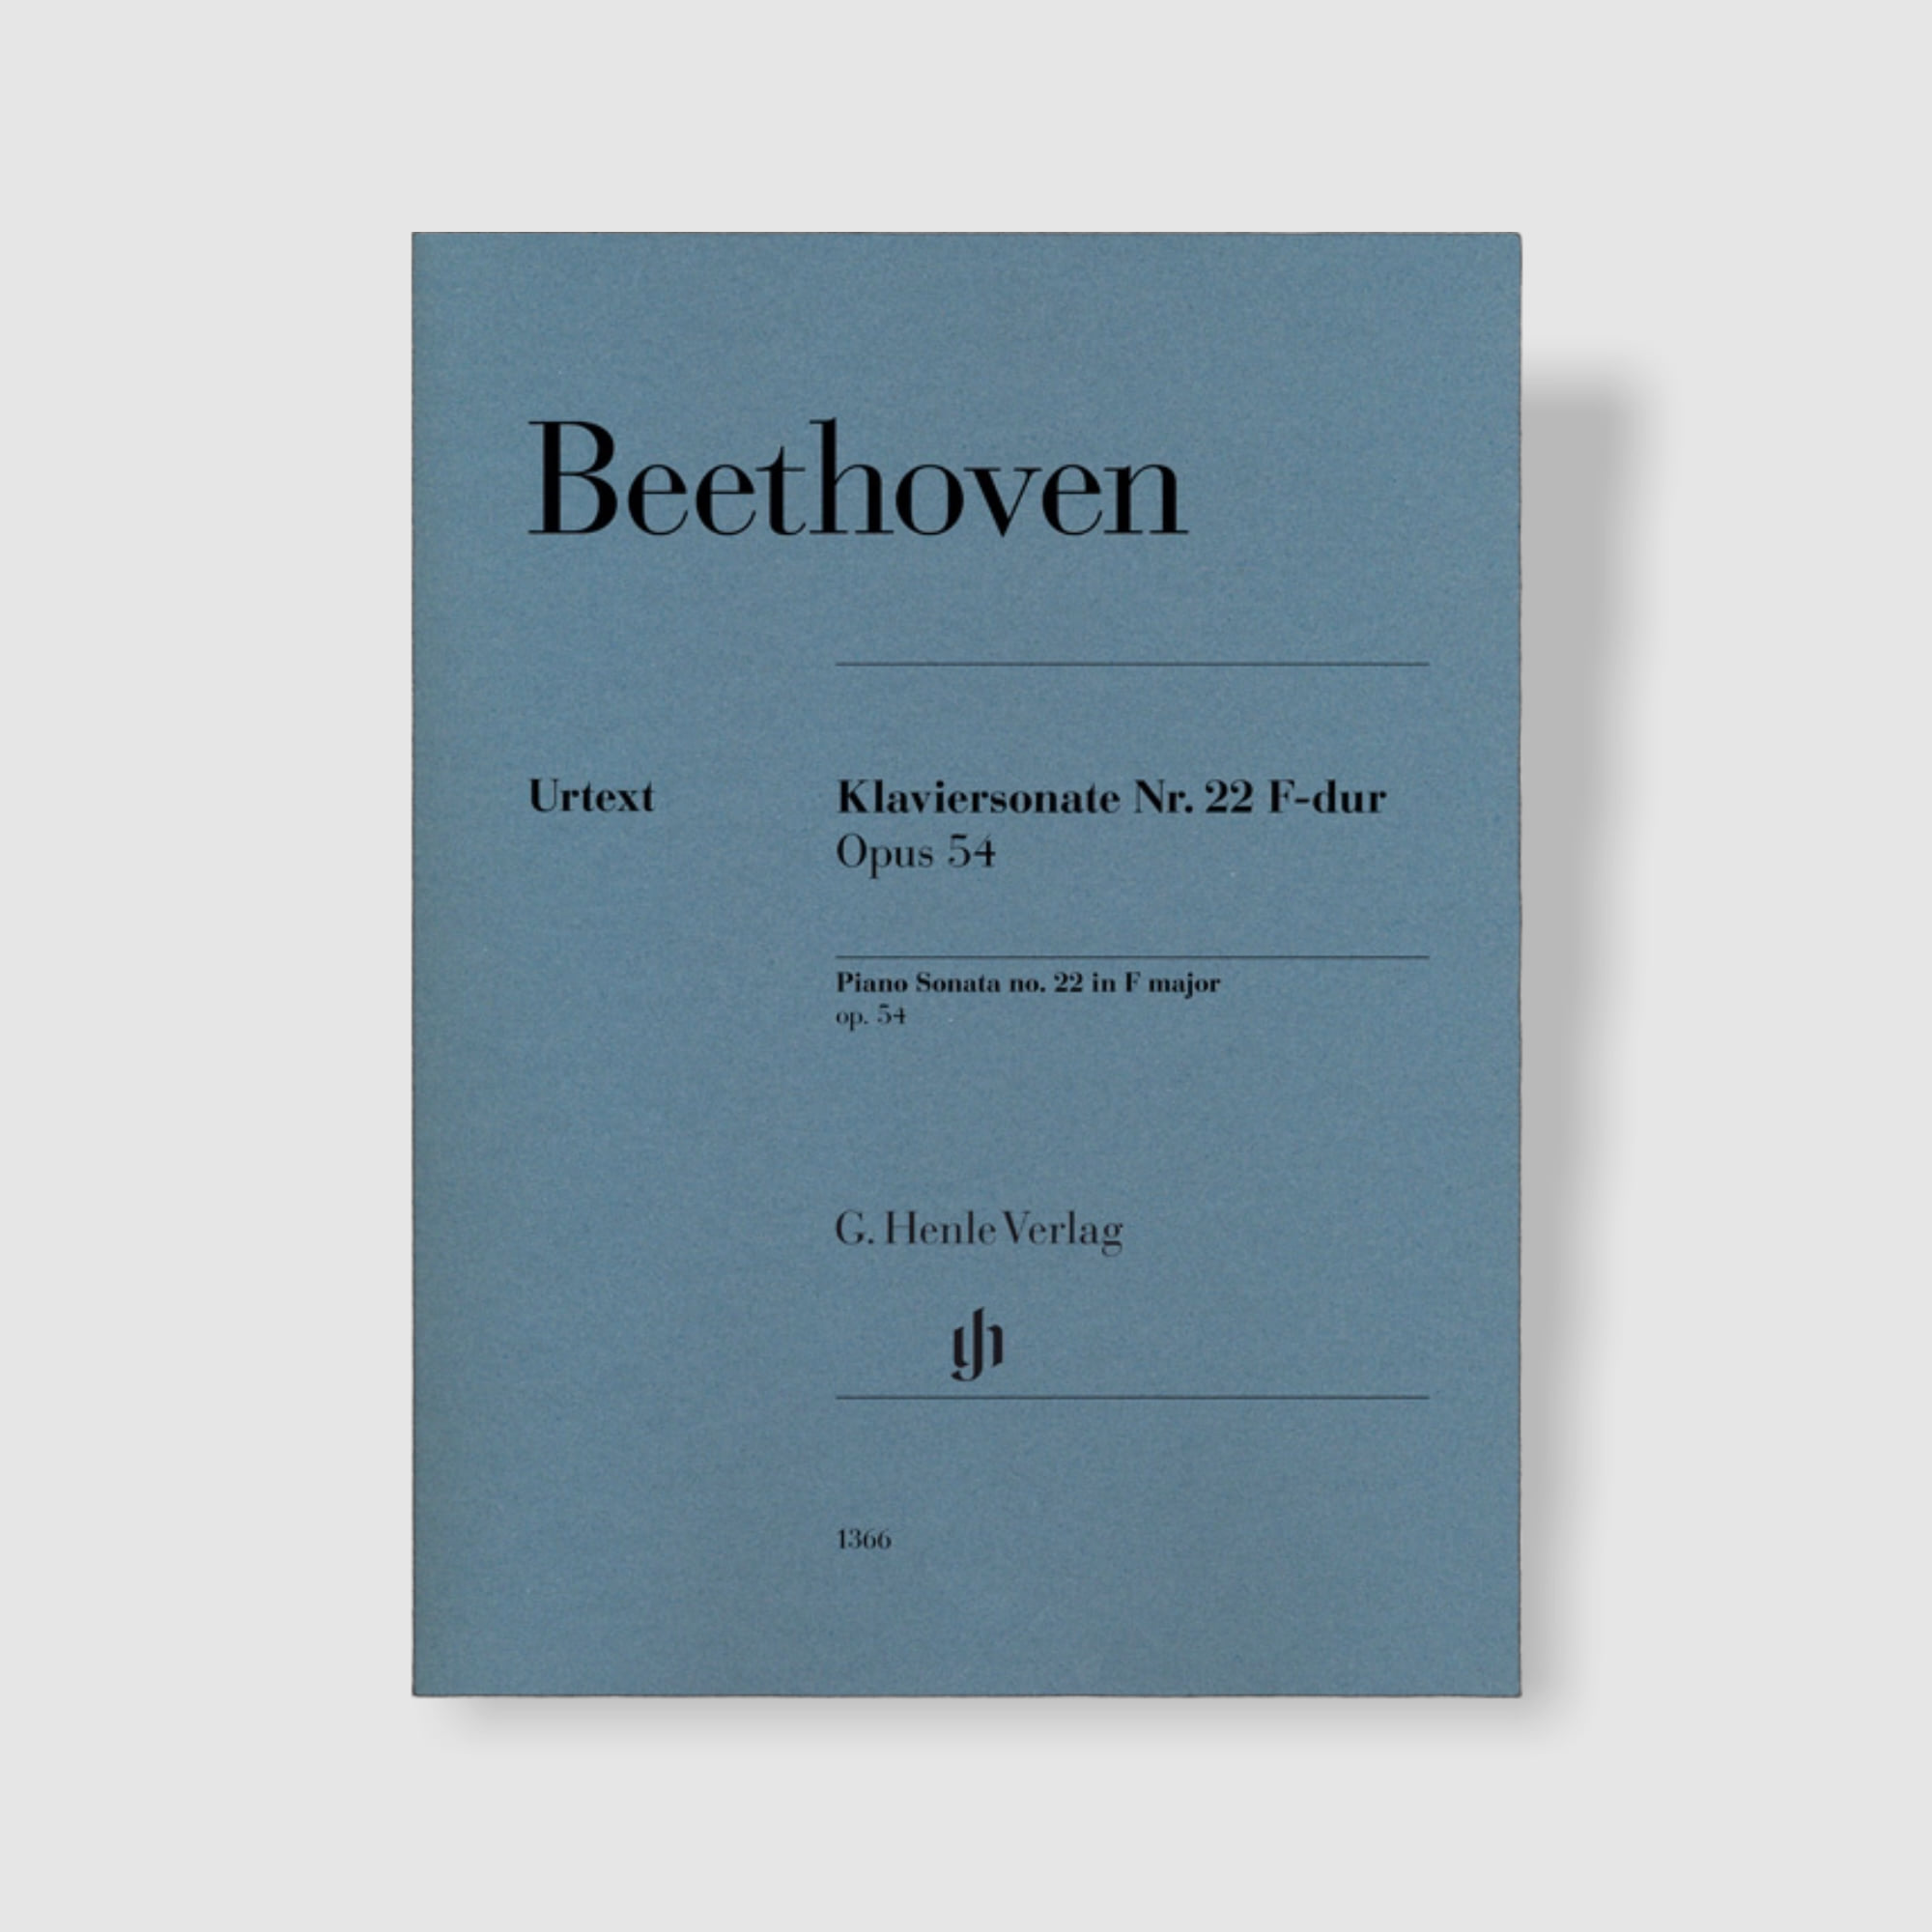 베토벤 피아노 소나타 No. 22 in F Major, Op. 54